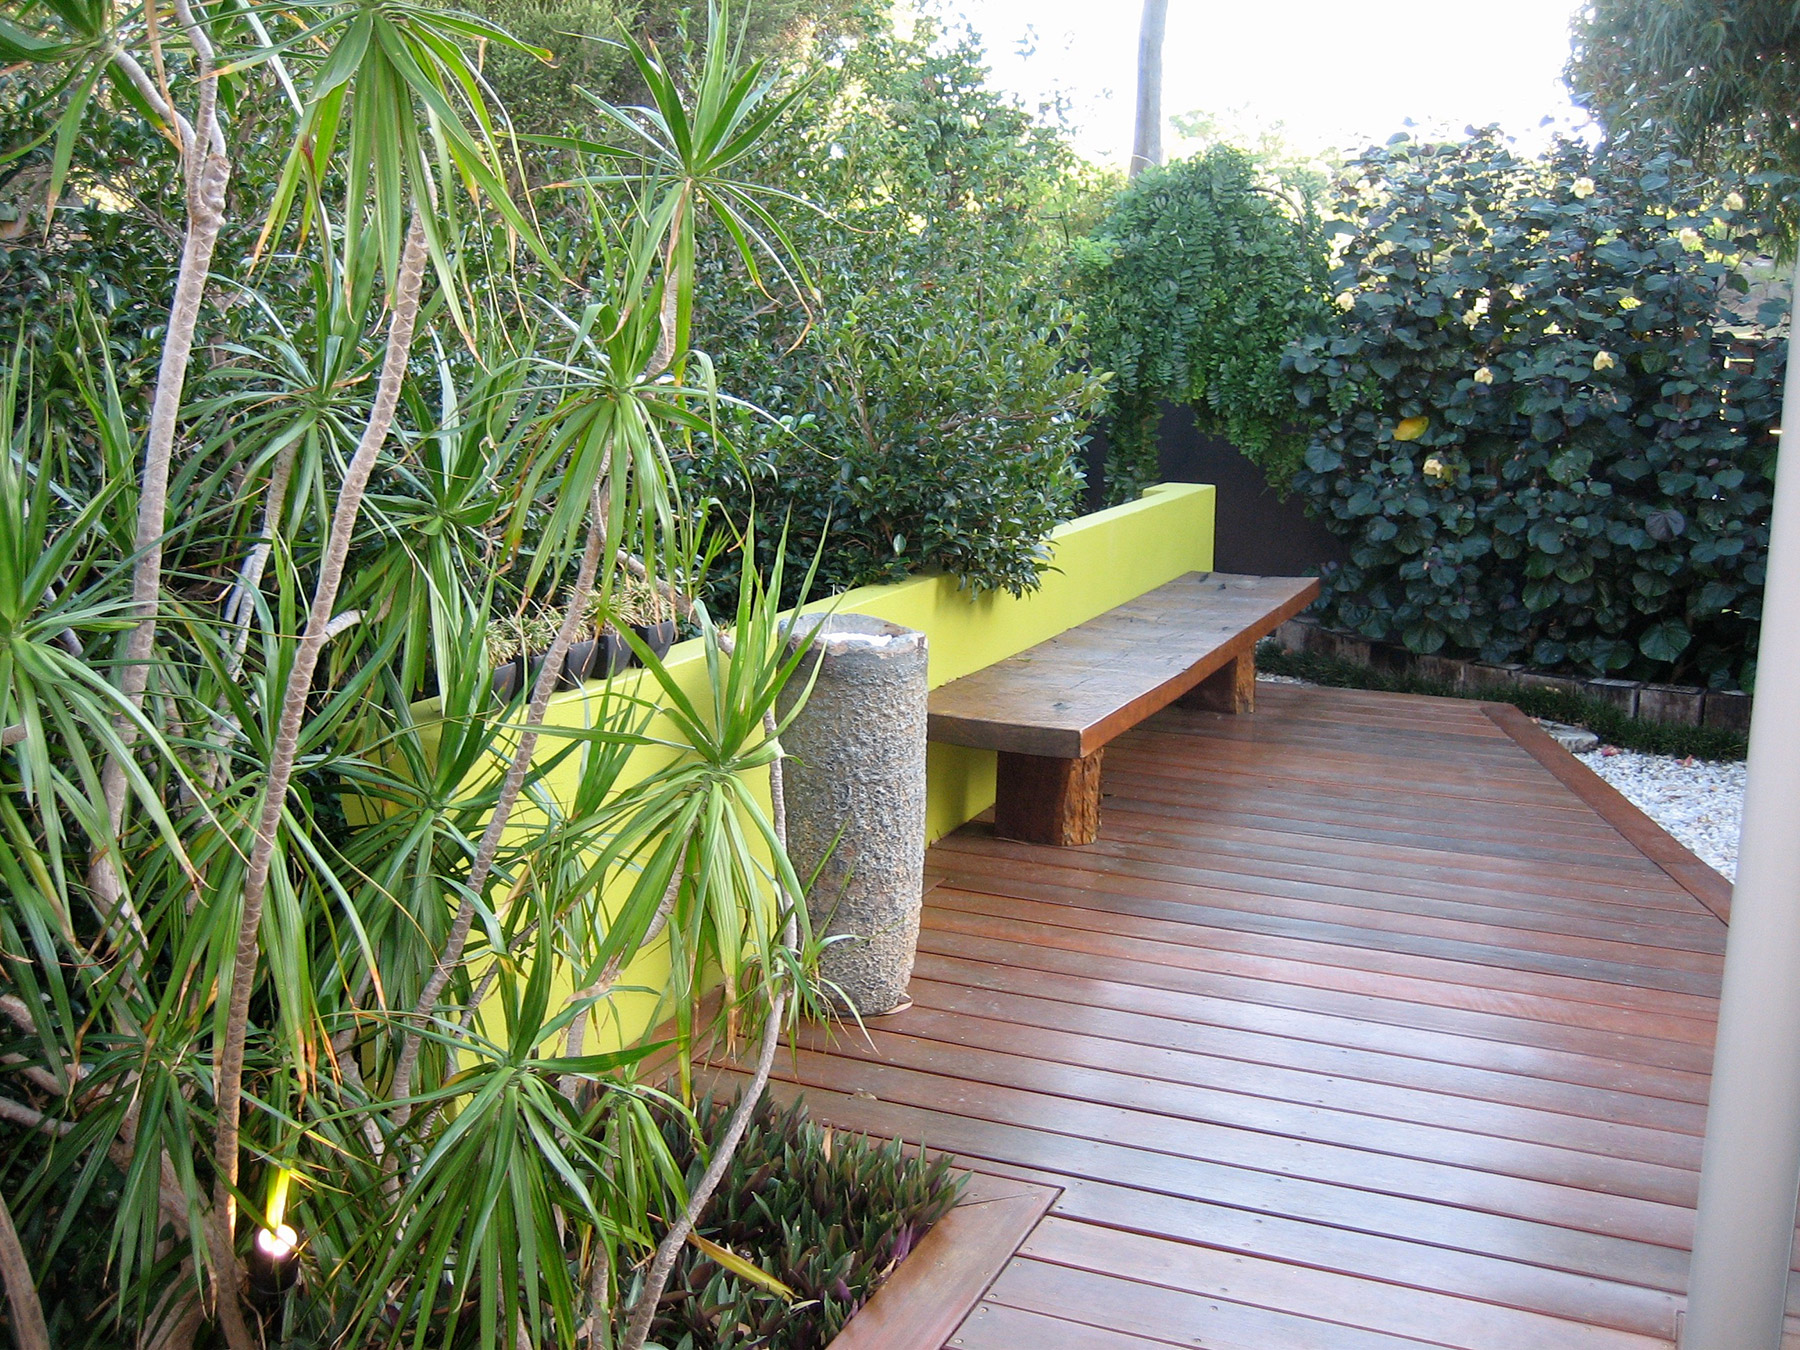 contemporary jarrah bench and crucible in courtyard garden